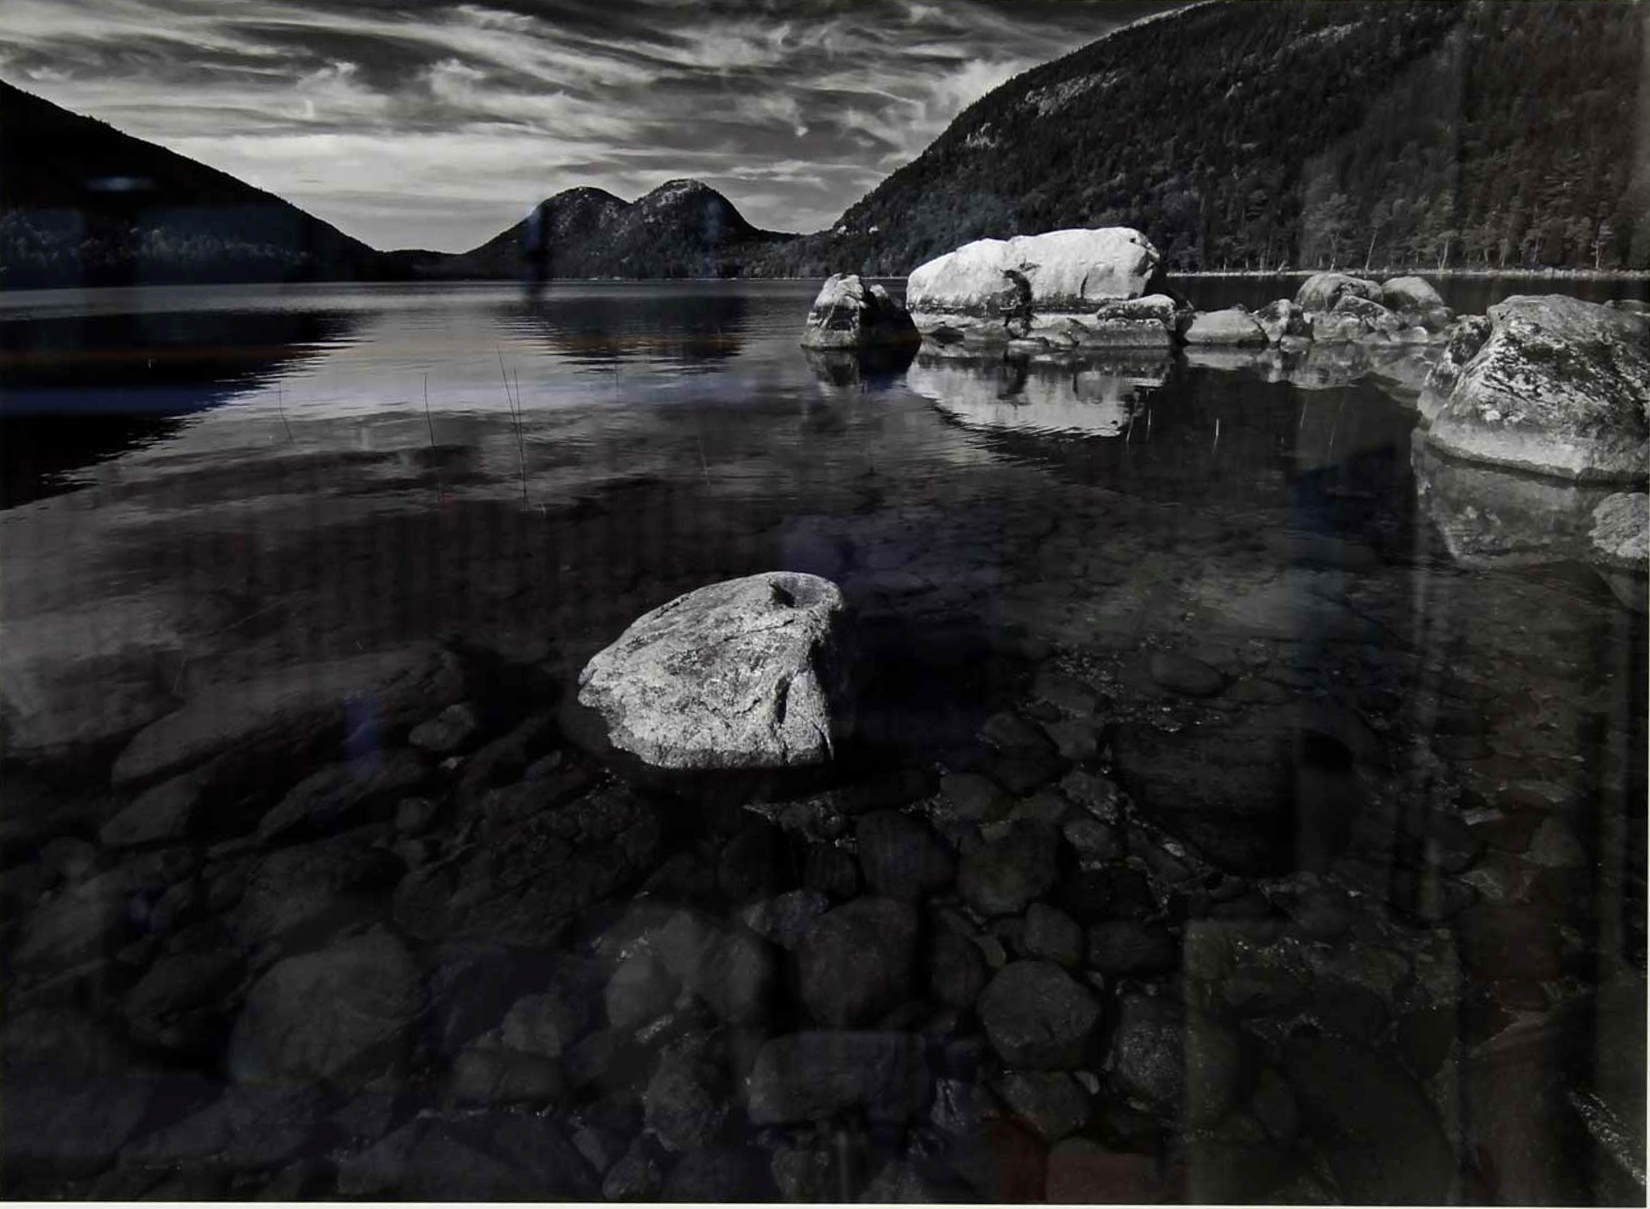 img-galeria-quote-Obra llamada  “Fotografía 6, Acadia”, tomada en Acadia N. P. Maine, USA. Técnica fotografía Digital,año 2014.